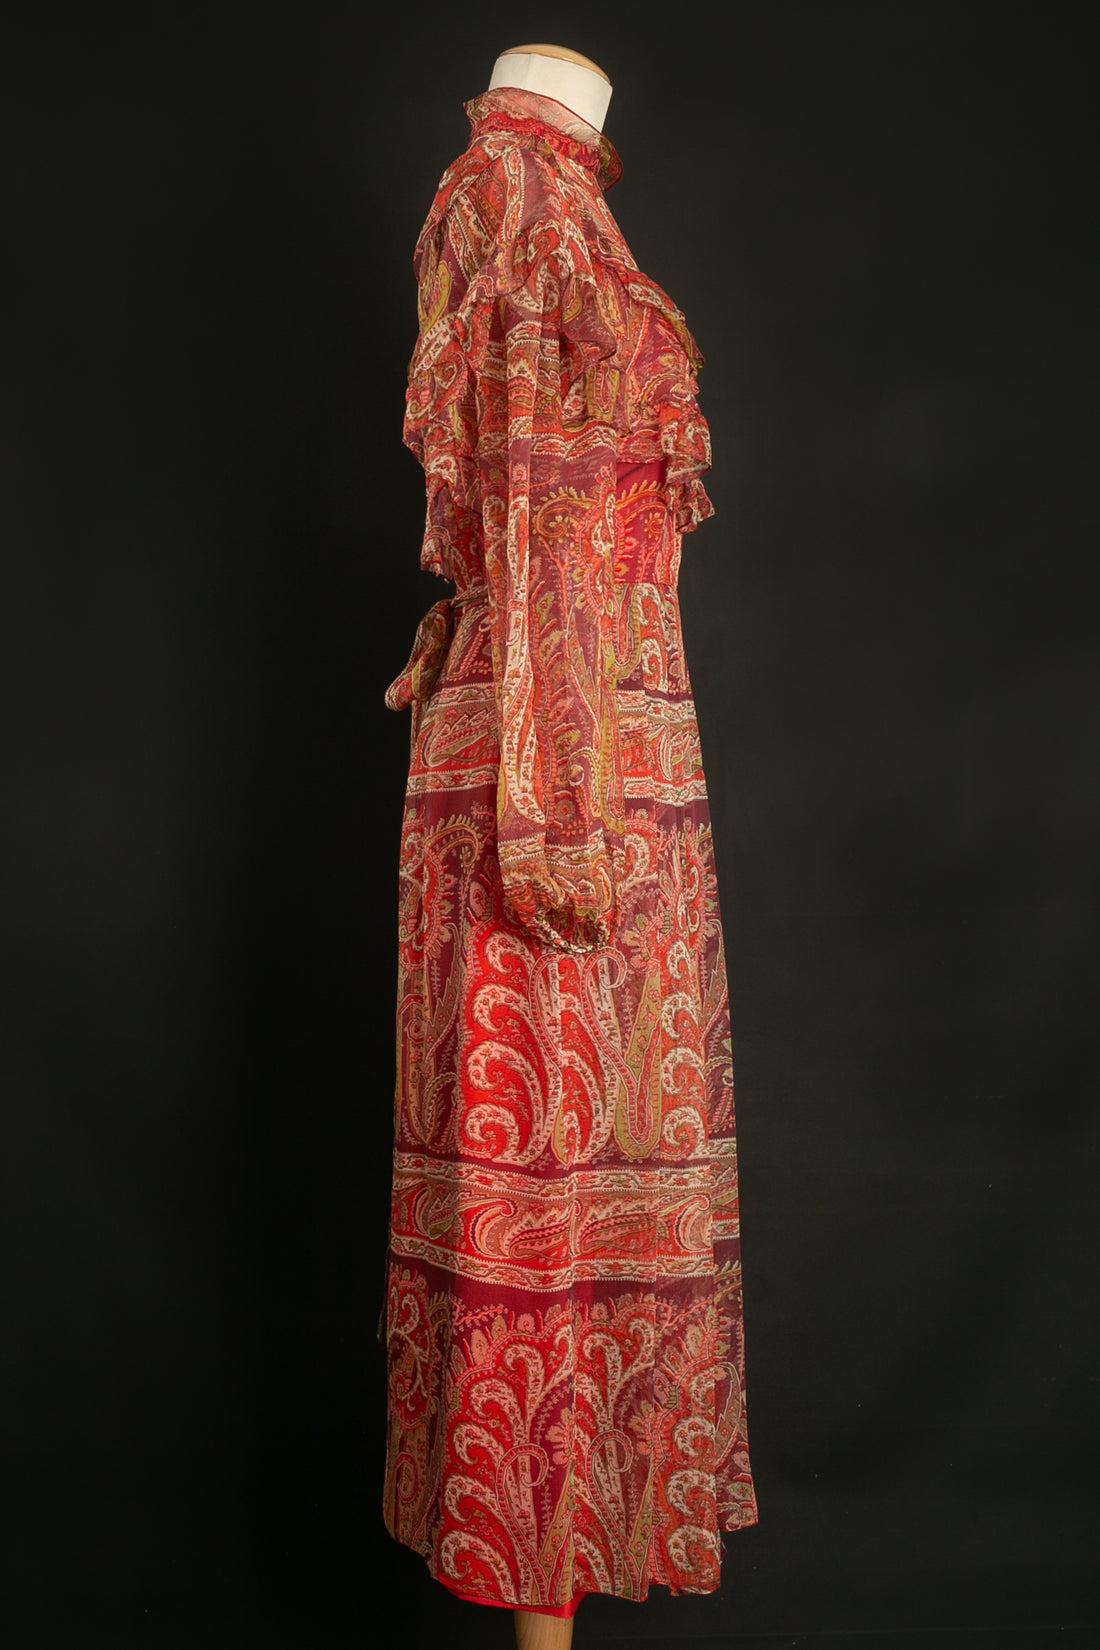 Thea Porter -(Made in France) Robe longue en mousseline de soie avec cachemire. Pas de taille indiquée, convient à un 36FR.

Informations complémentaires : 
Dimensions : Épaules : 35 cm, Poitrine : 44 cm, Taille : 30 cm, Longueur des manches : 66